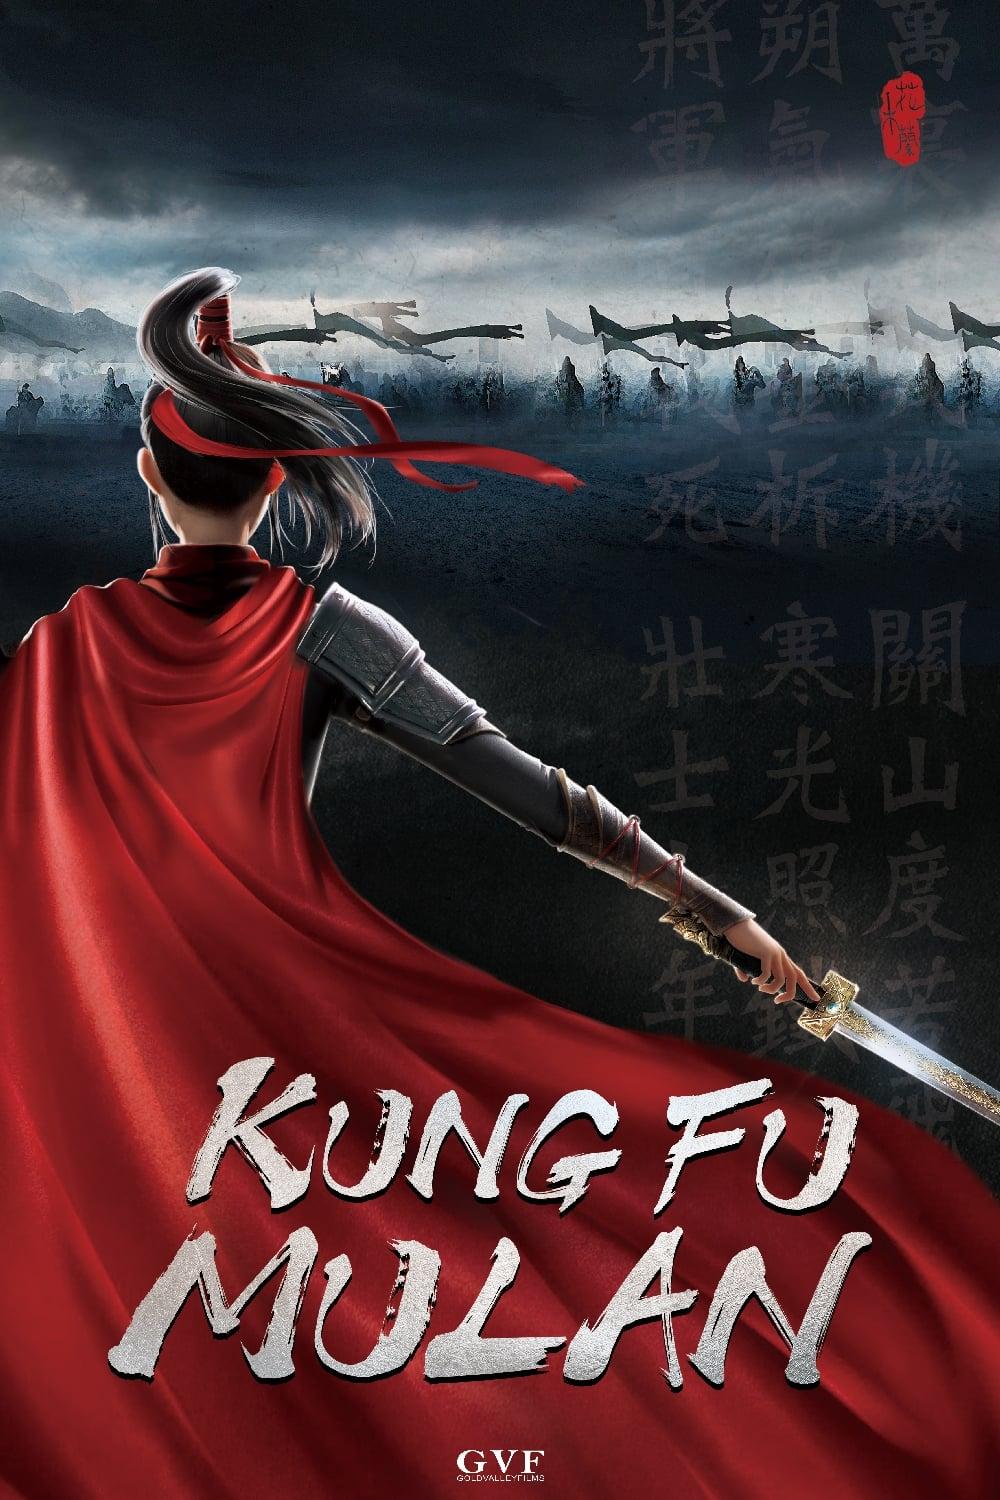 Kung Fu Mulan poster